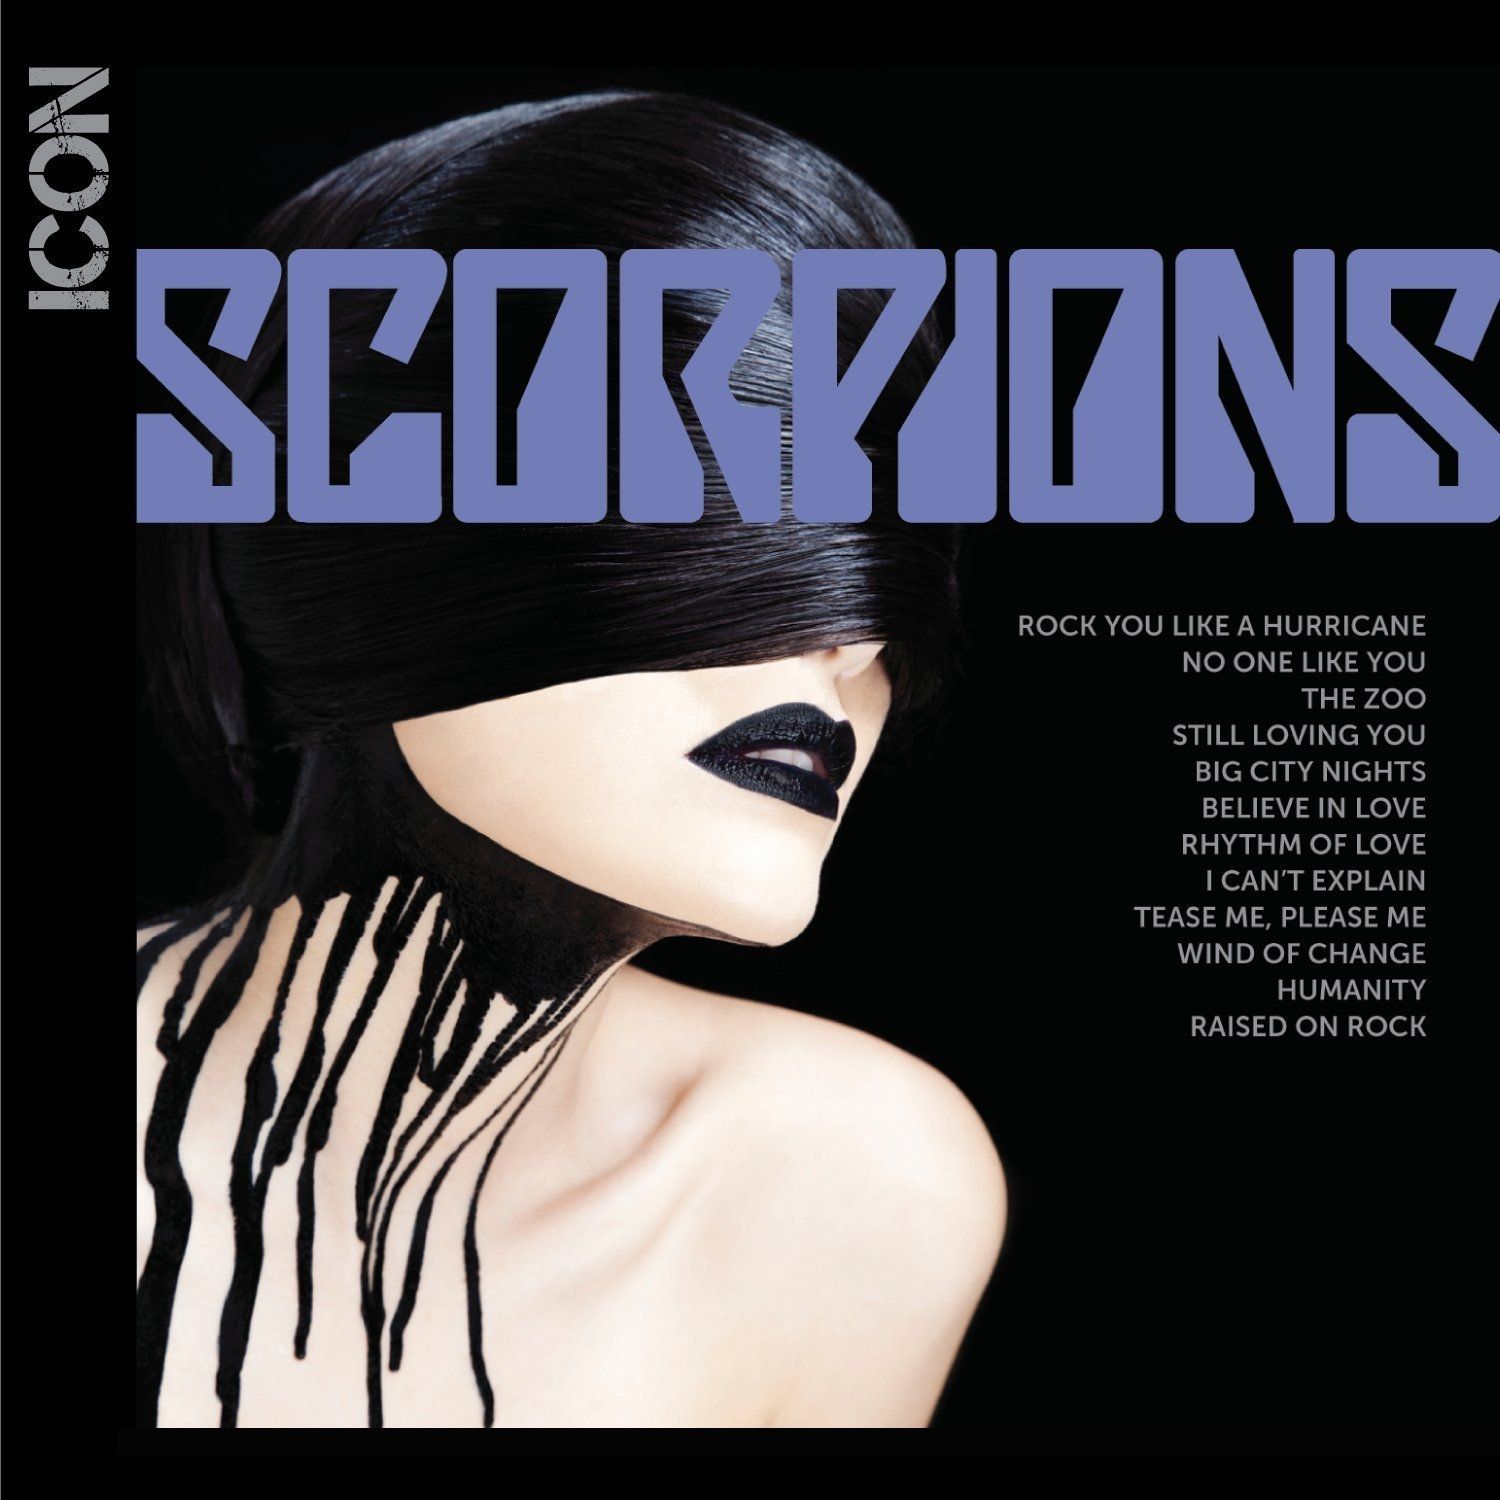 Imagem do álbum Icon do(a) artista Scorpions